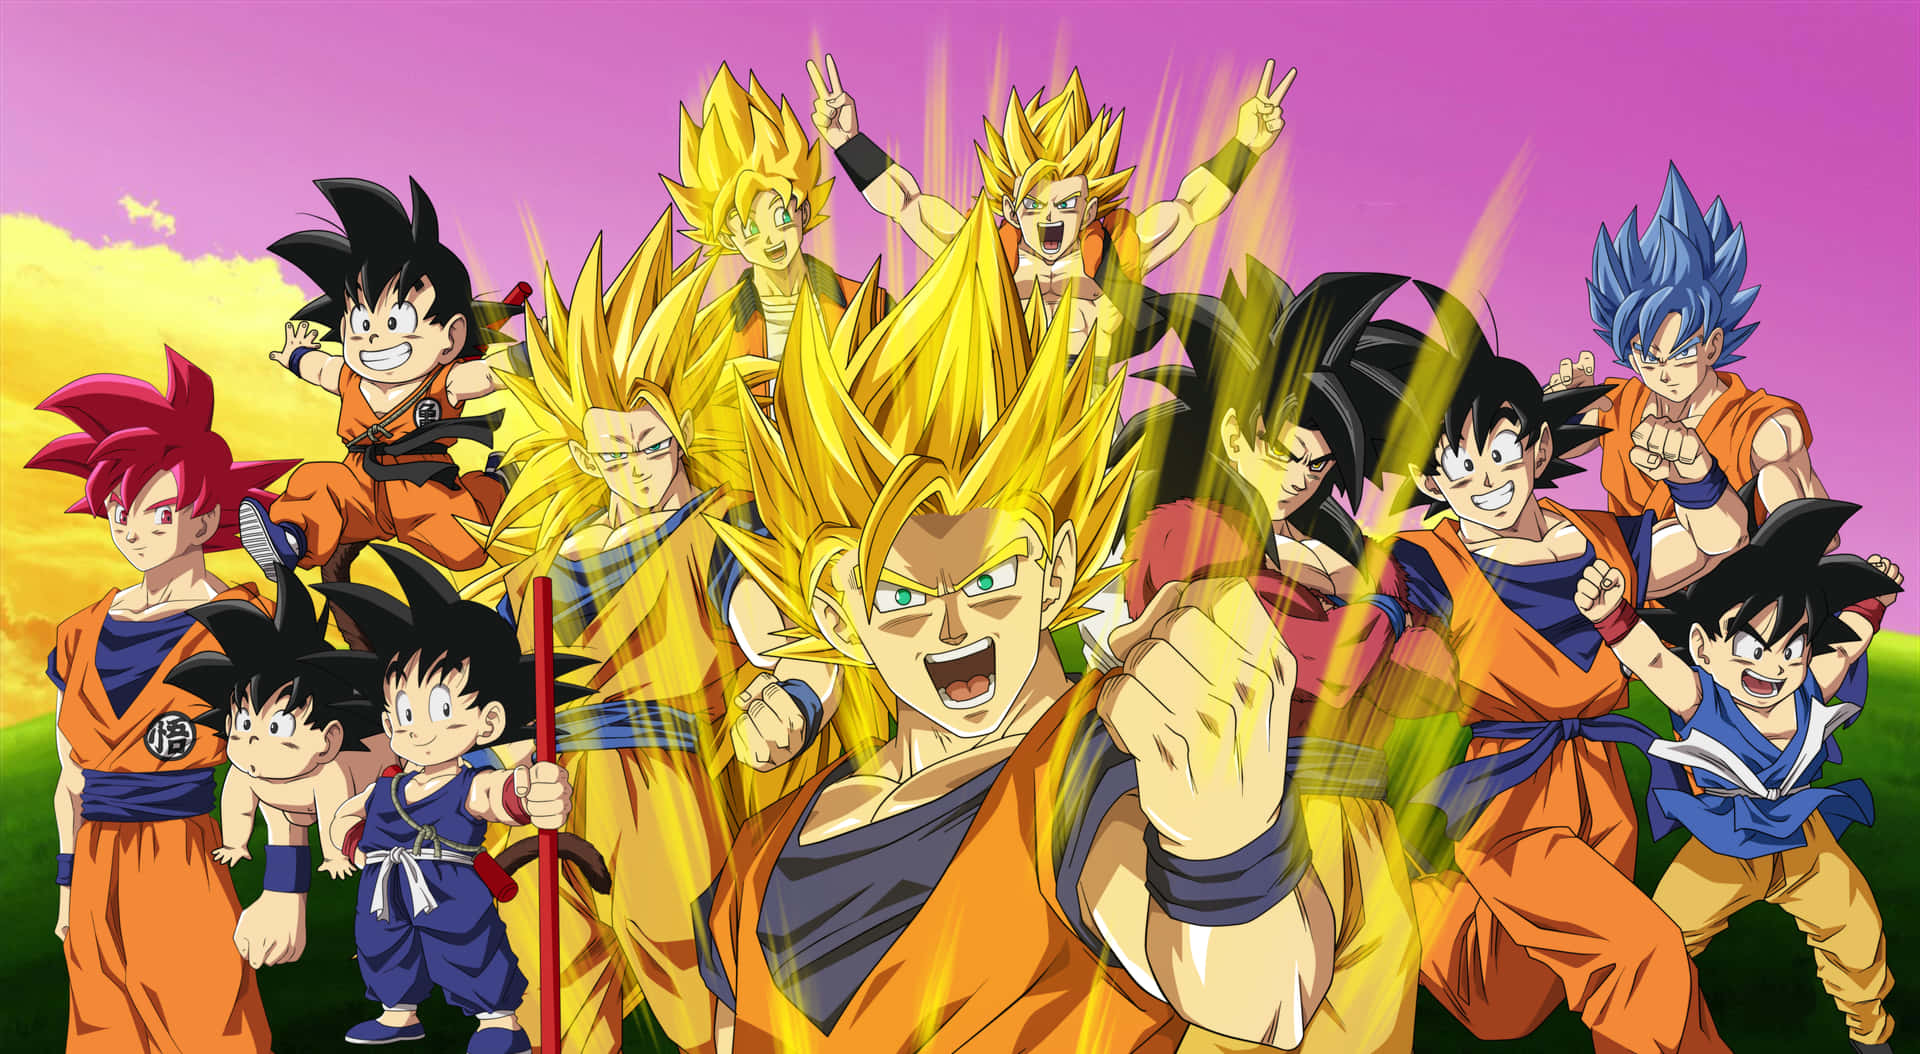 Posterem Hd Com Todos Os Personagens Do Anime Dragon Ball Z. Papel de Parede